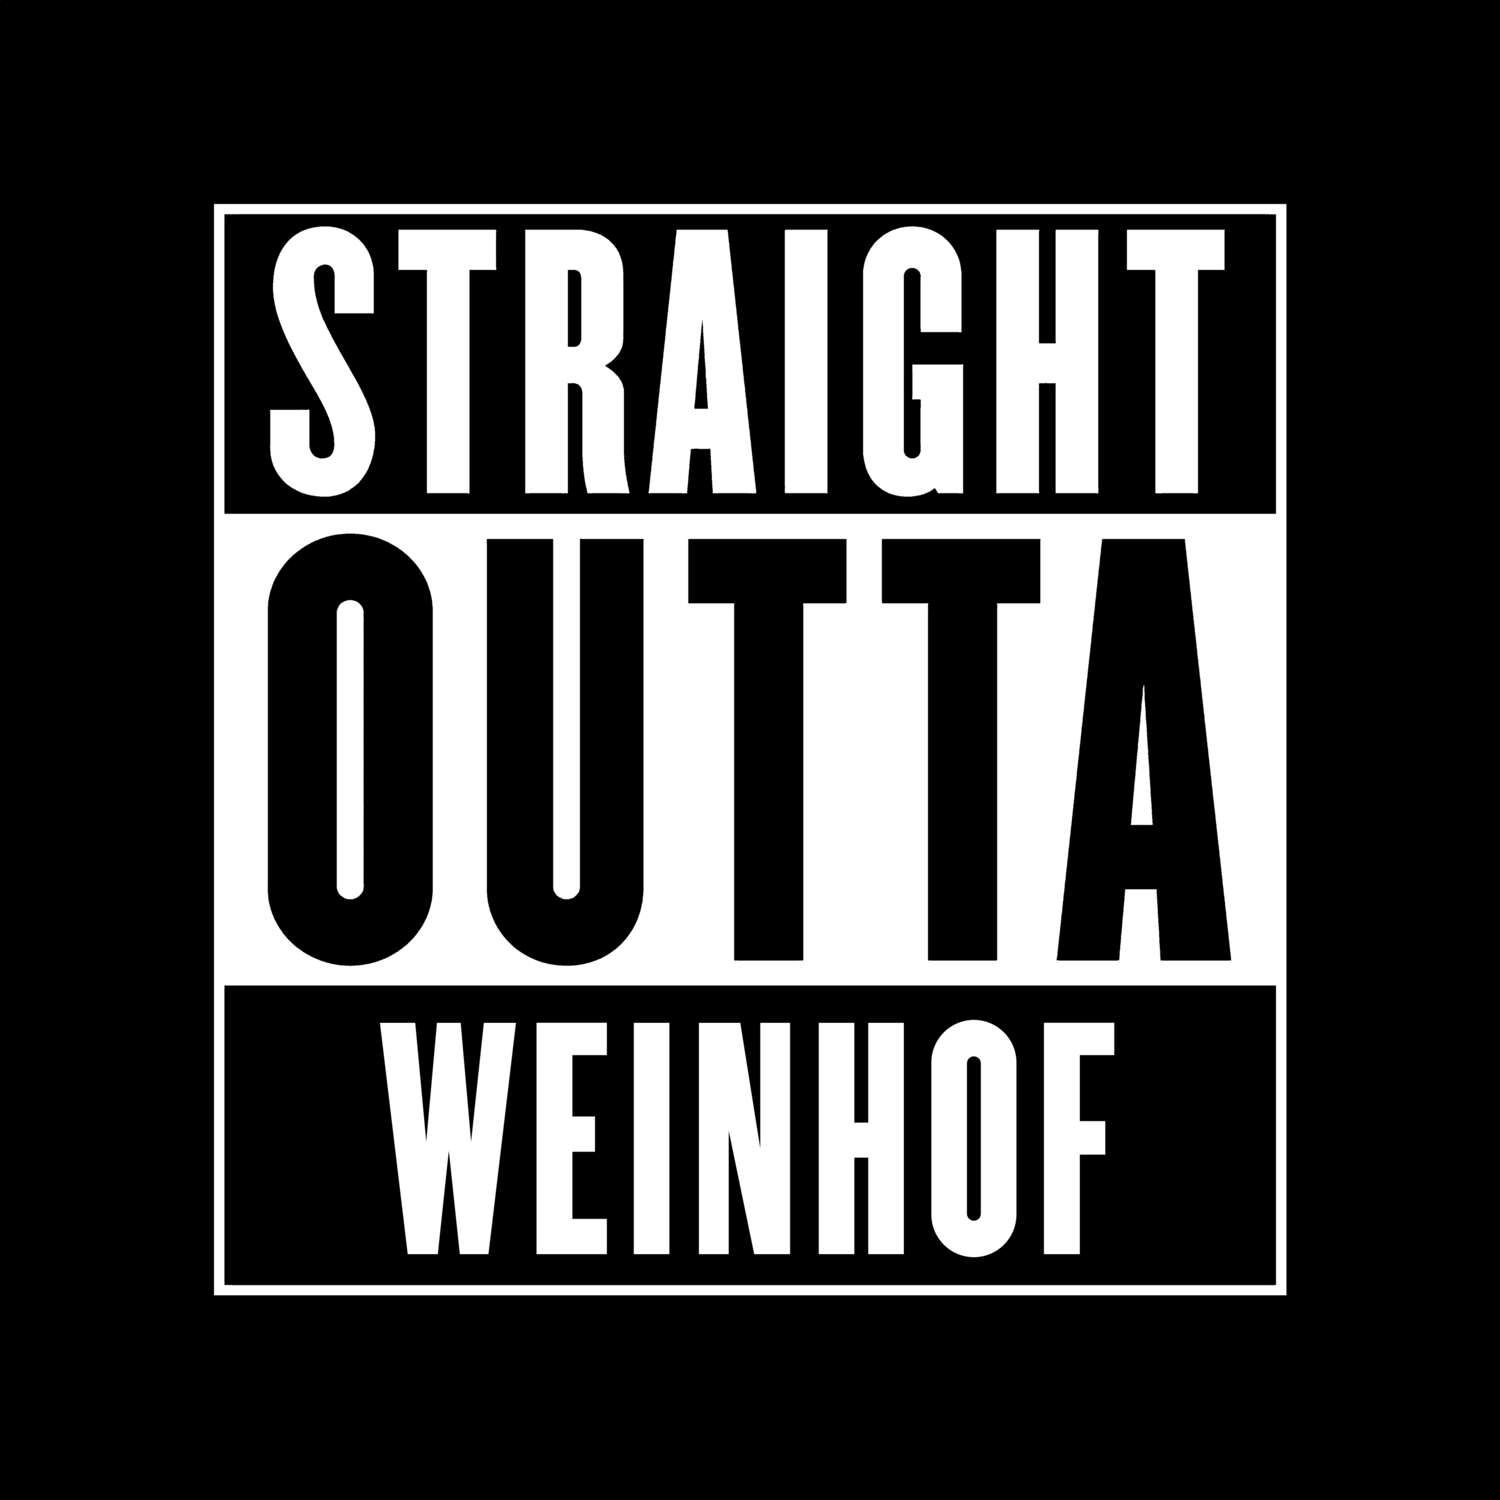 Weinhof T-Shirt »Straight Outta«